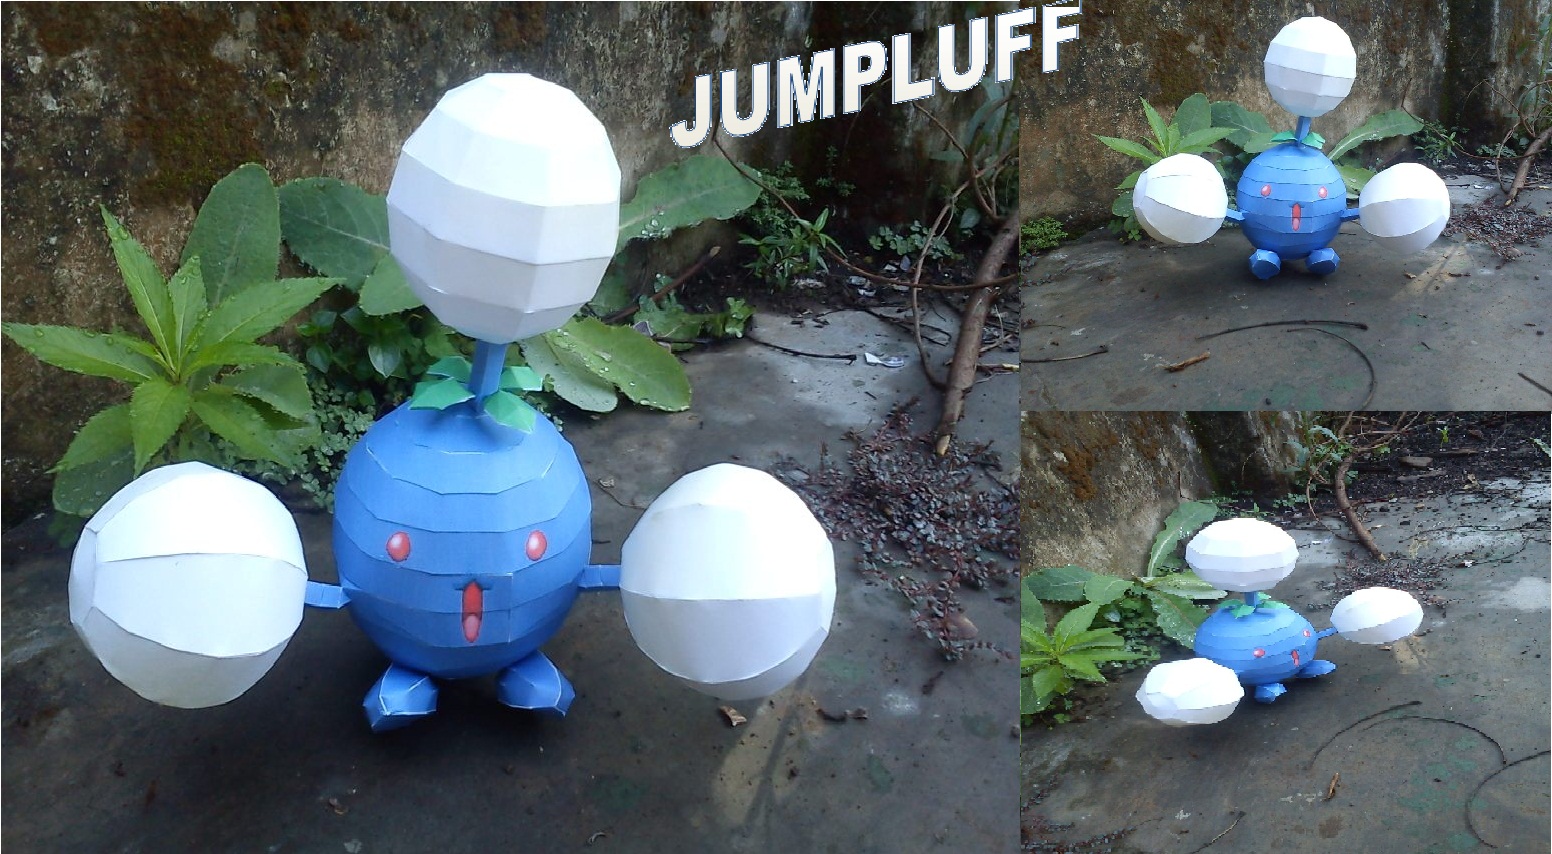 POkemon Jumpluff Papercraft